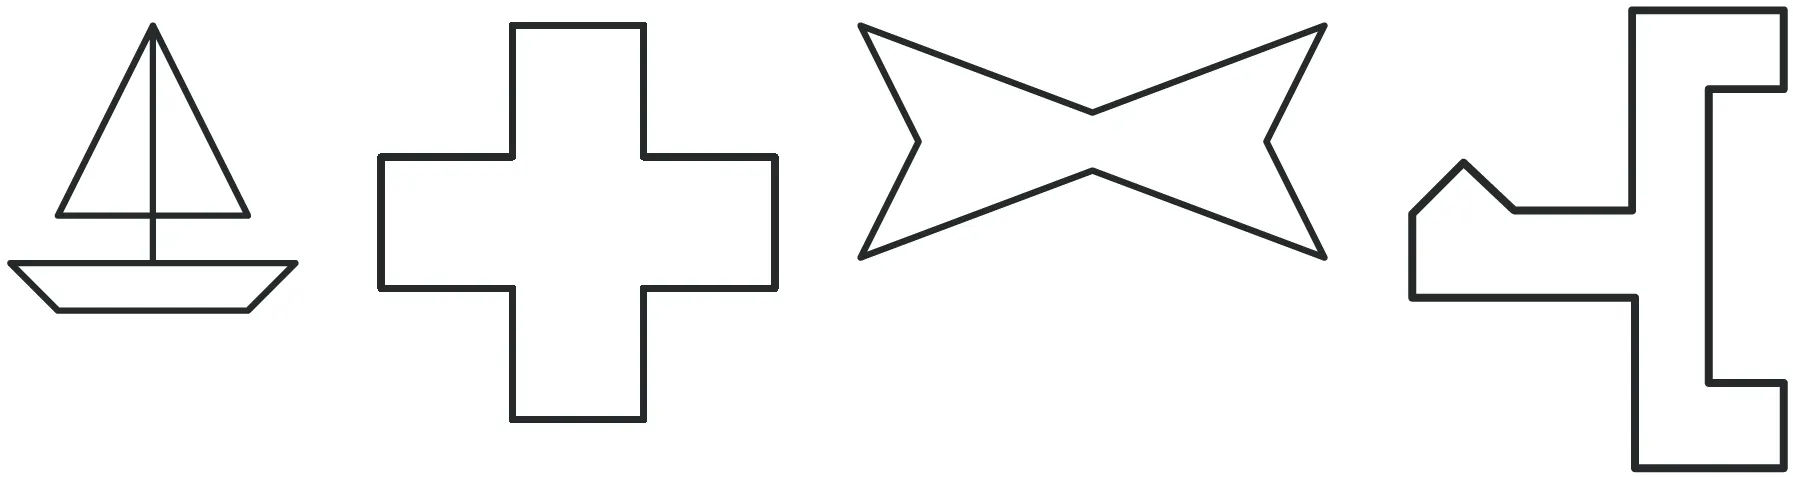 Ensemble de figures : un bateur, une croix, un noued papillon et une forme géométrique